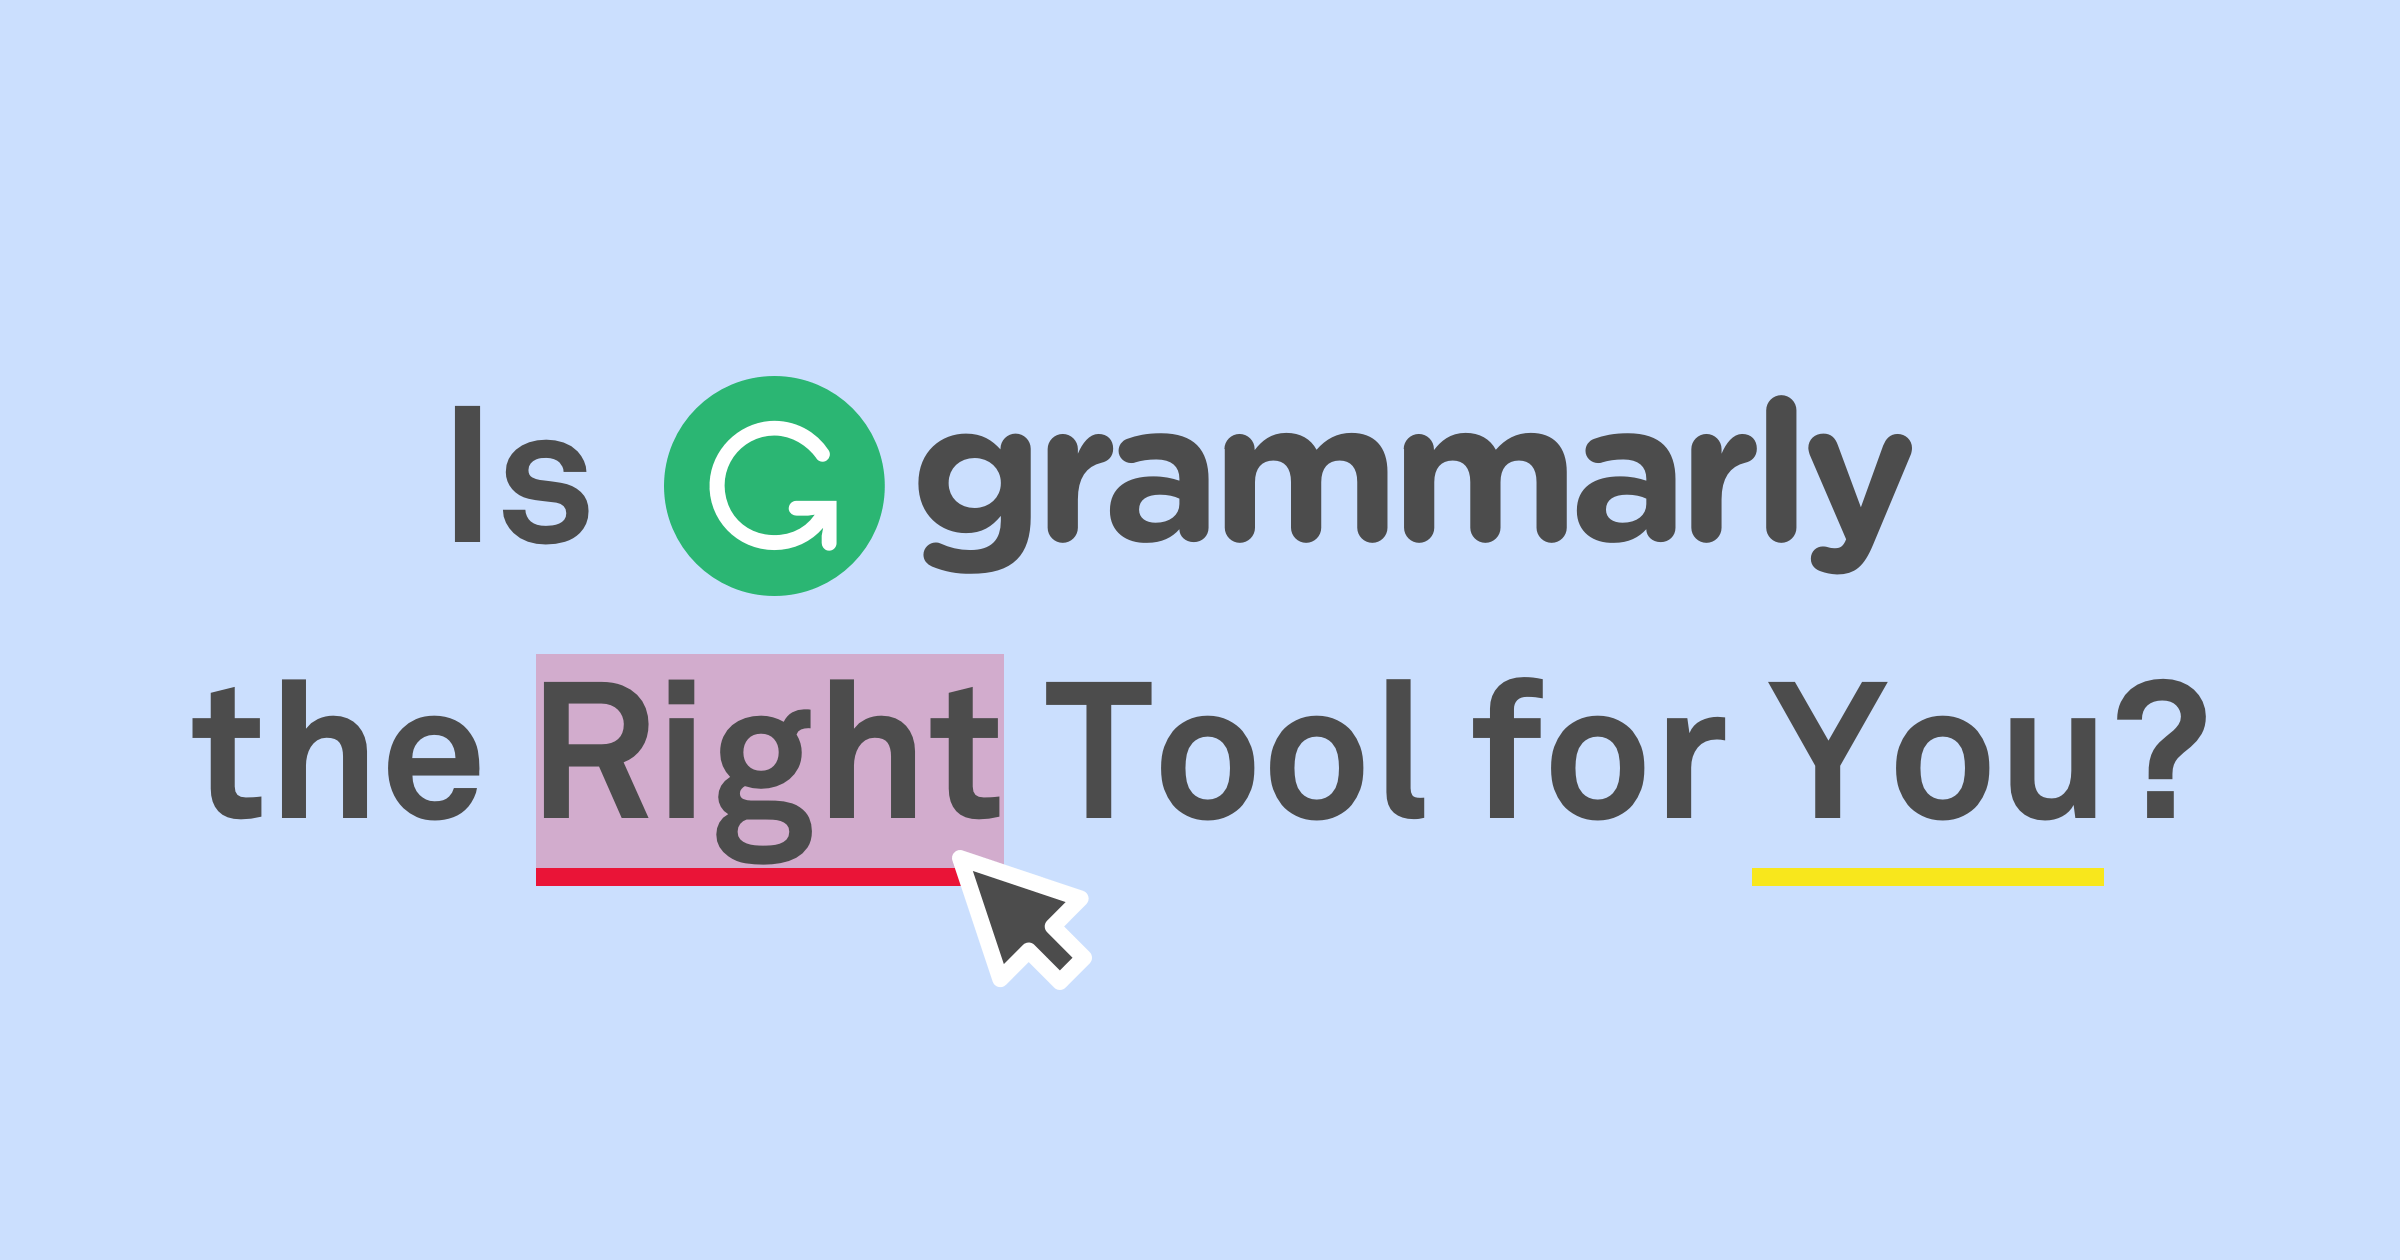 GRAMMARLY Writing Grammar Checker Review FREE APP - Grammarly ... تحسين الكتابة بالانجليزية بالمجان